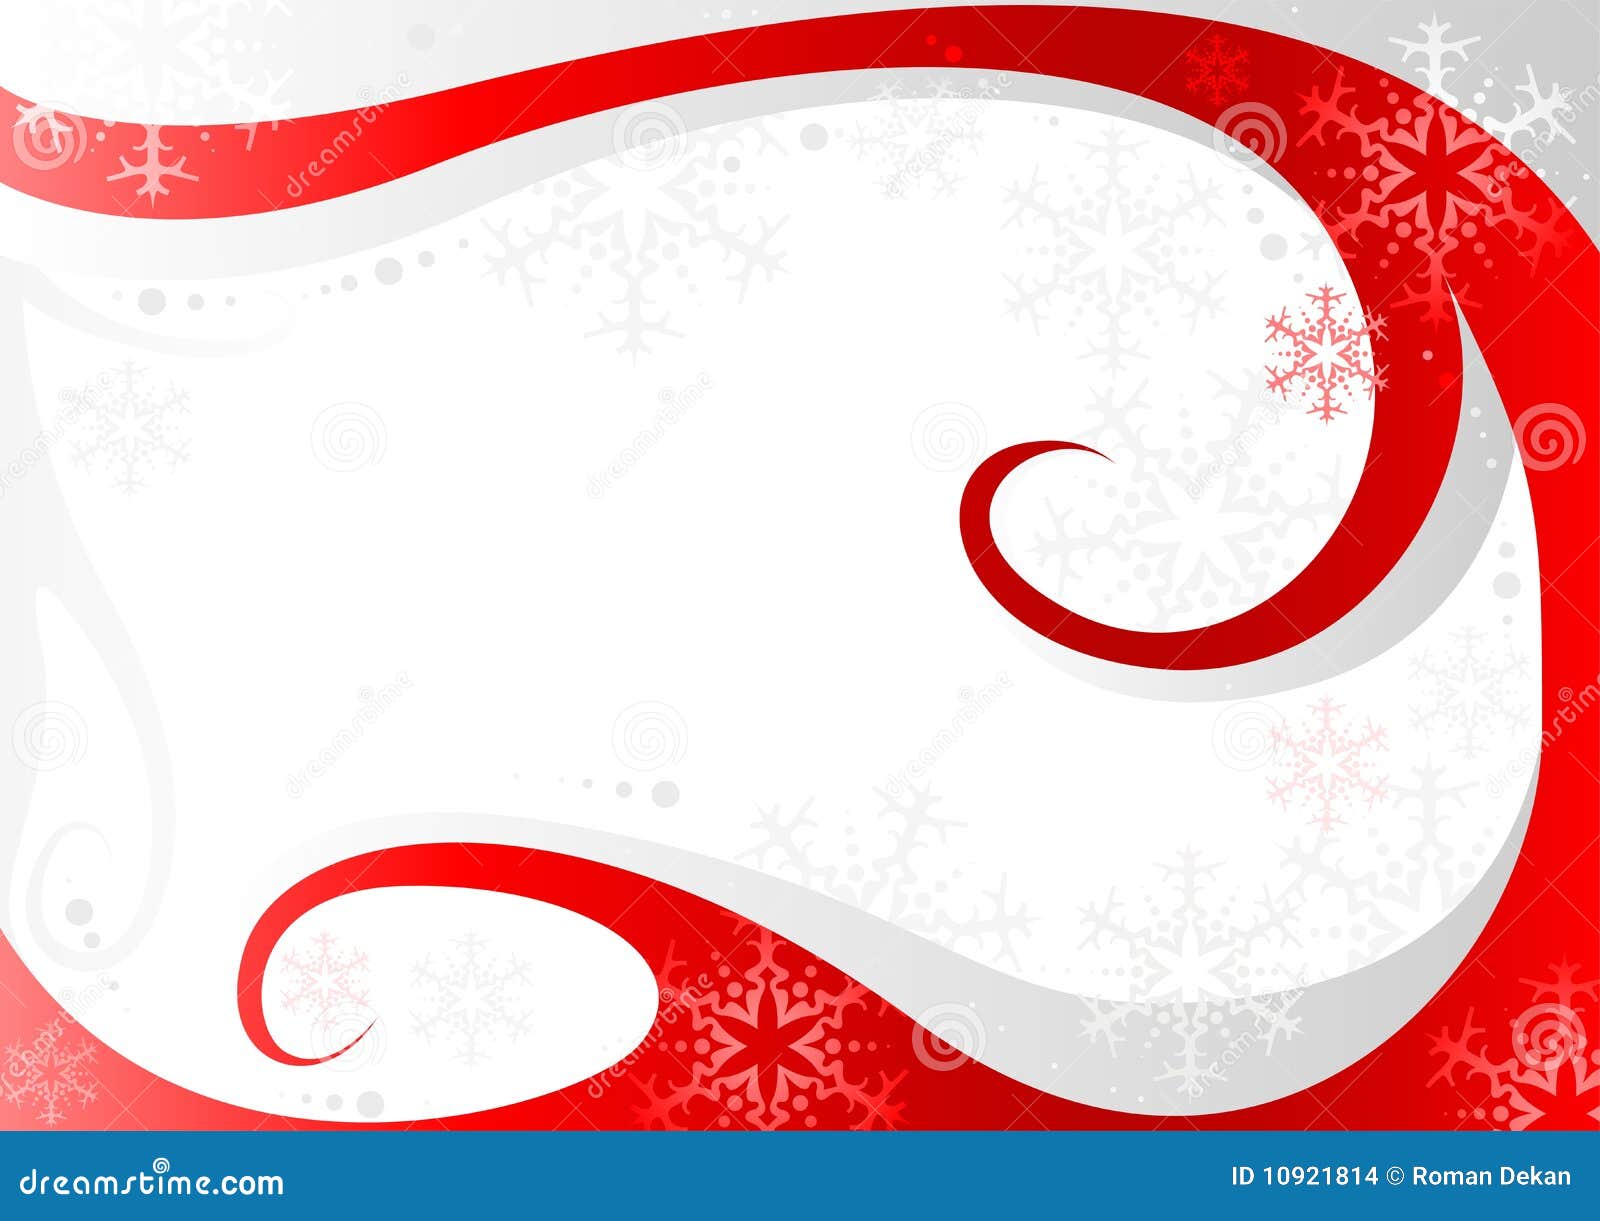 Sfondi Natalizi Bianchi.Natale Rosso Bianco Illustrazione Vettoriale Illustrazione Di Evento 10921814